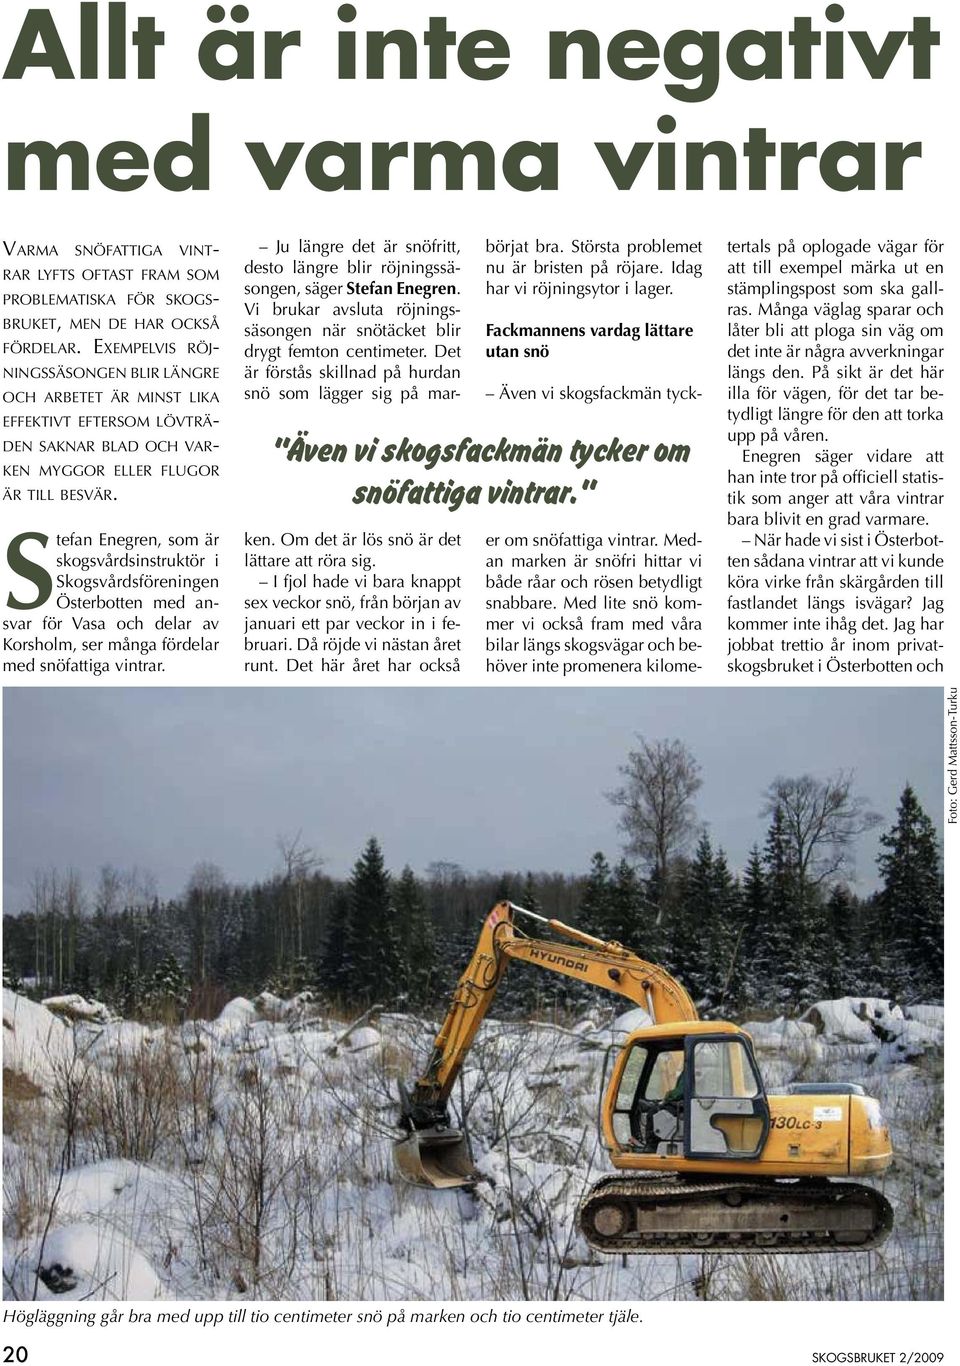 Stefan Enegren, som är skogsvårdsinstruktör i Skogsvårdsföreningen Österbotten med ansvar för Vasa och delar av Korsholm, ser många fördelar med snöfattiga vintrar.